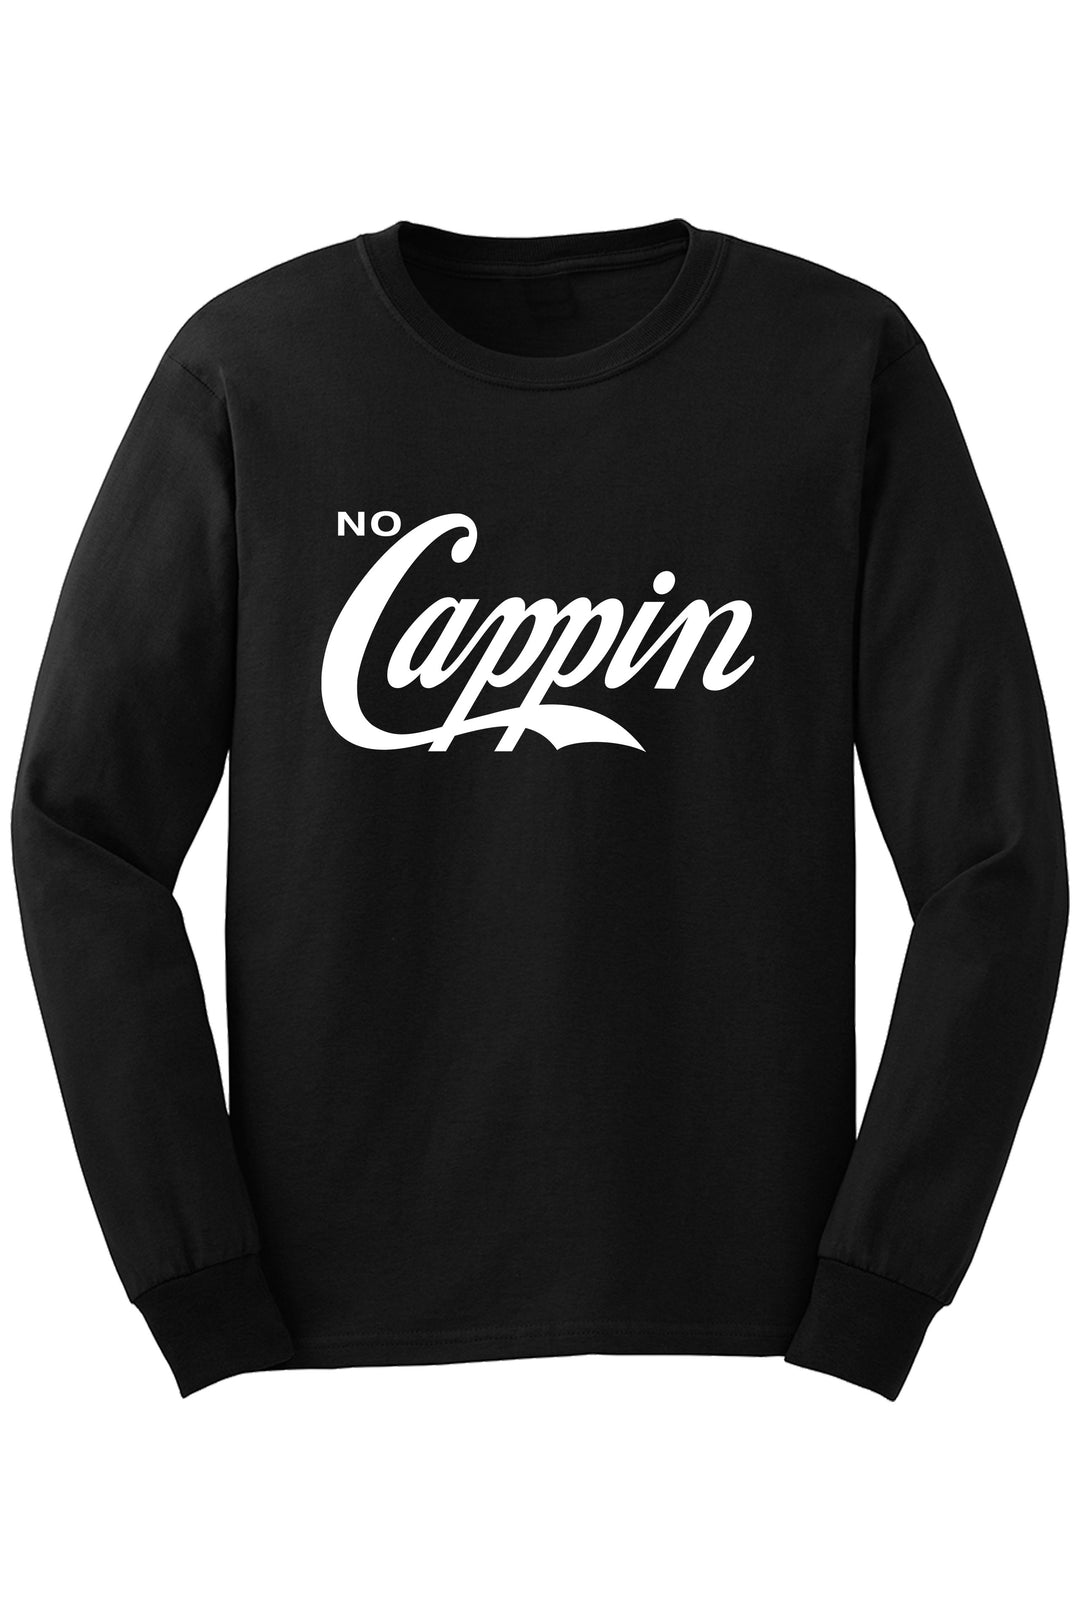 No Cappin Long Sleeve Tee (White Logo) - Zamage